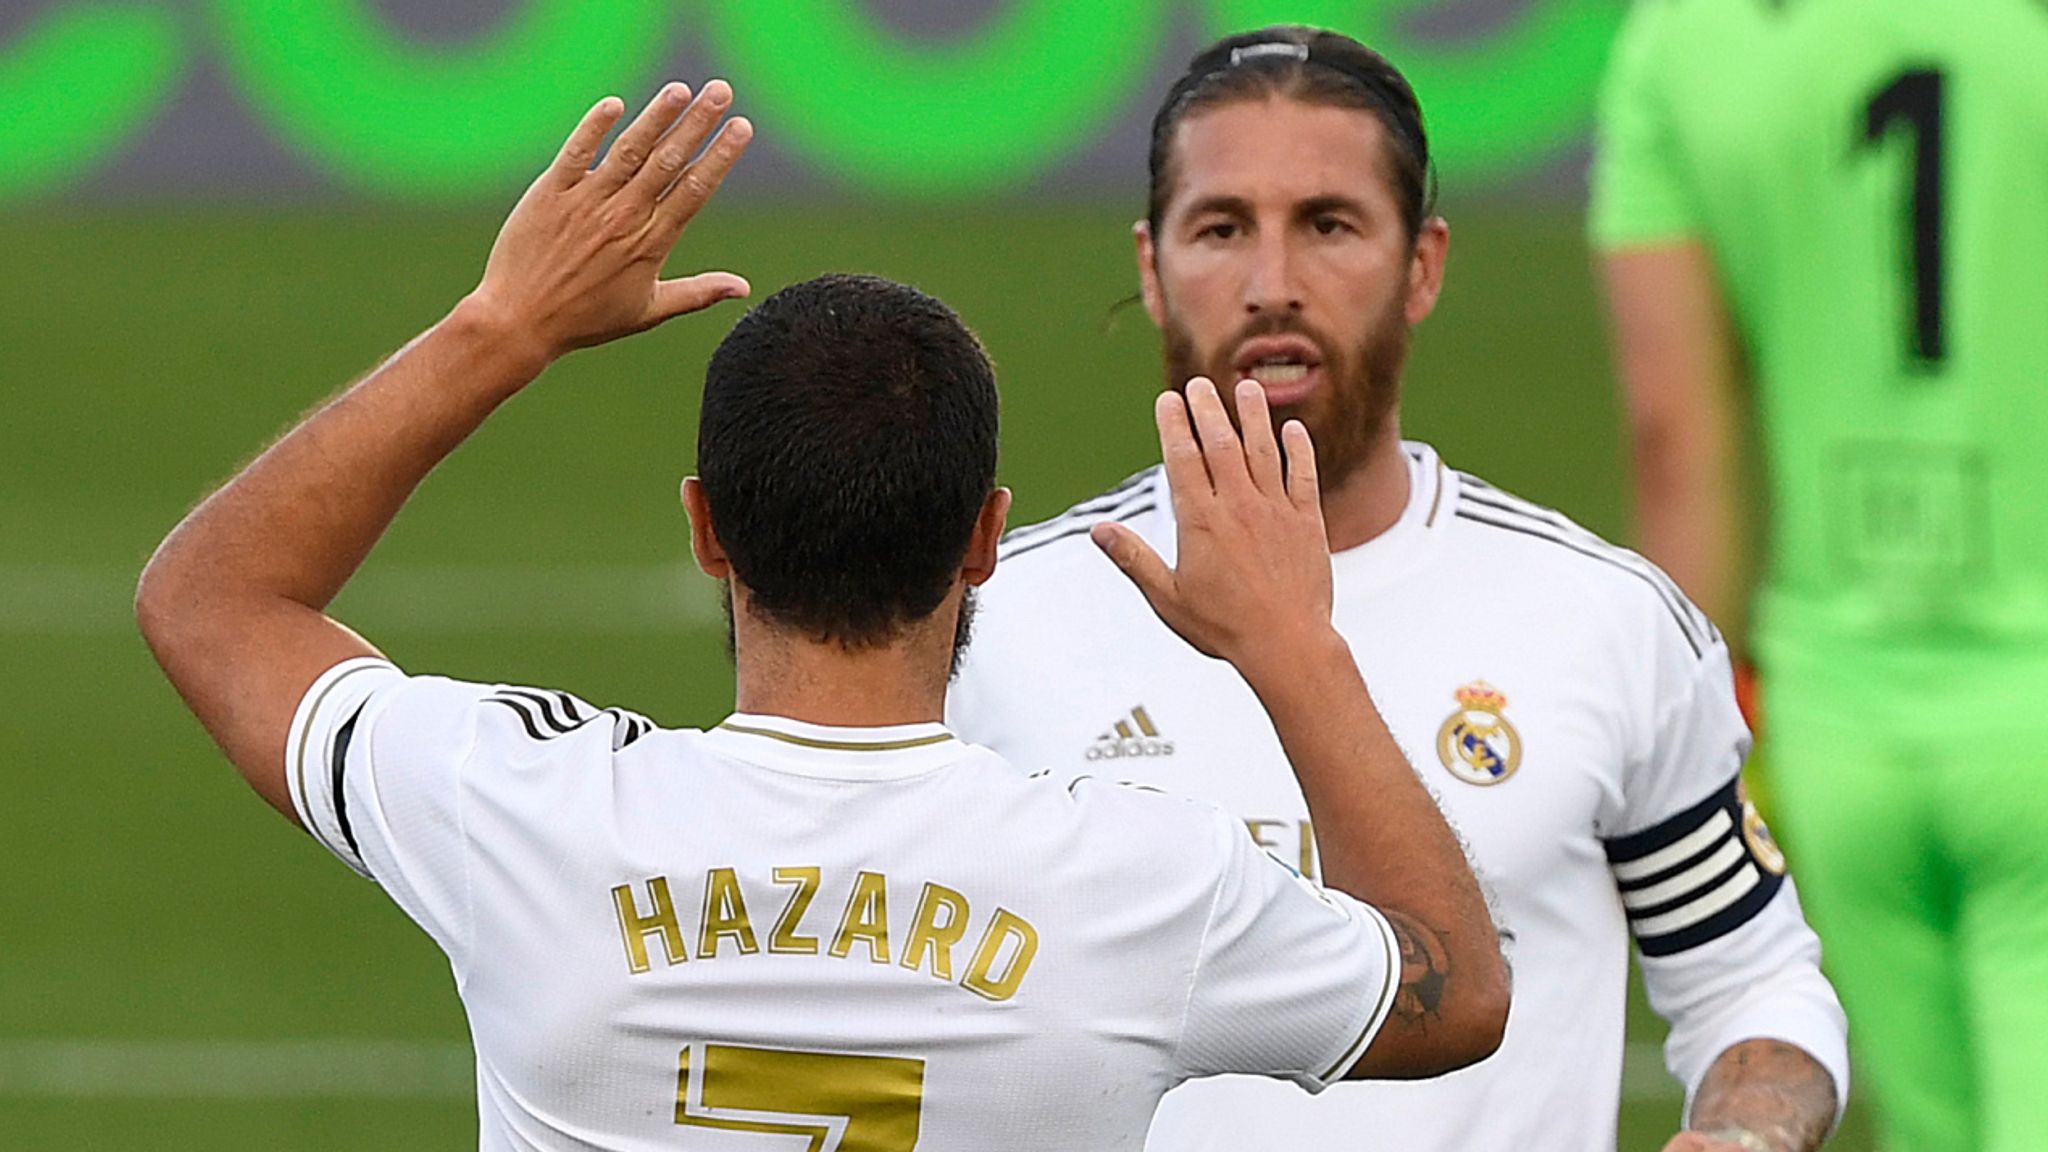 Real Madrid Menang 3-1 Atas Eibar, Hazard Tampil Mengesankan Setelah Pulih Dari Cedera